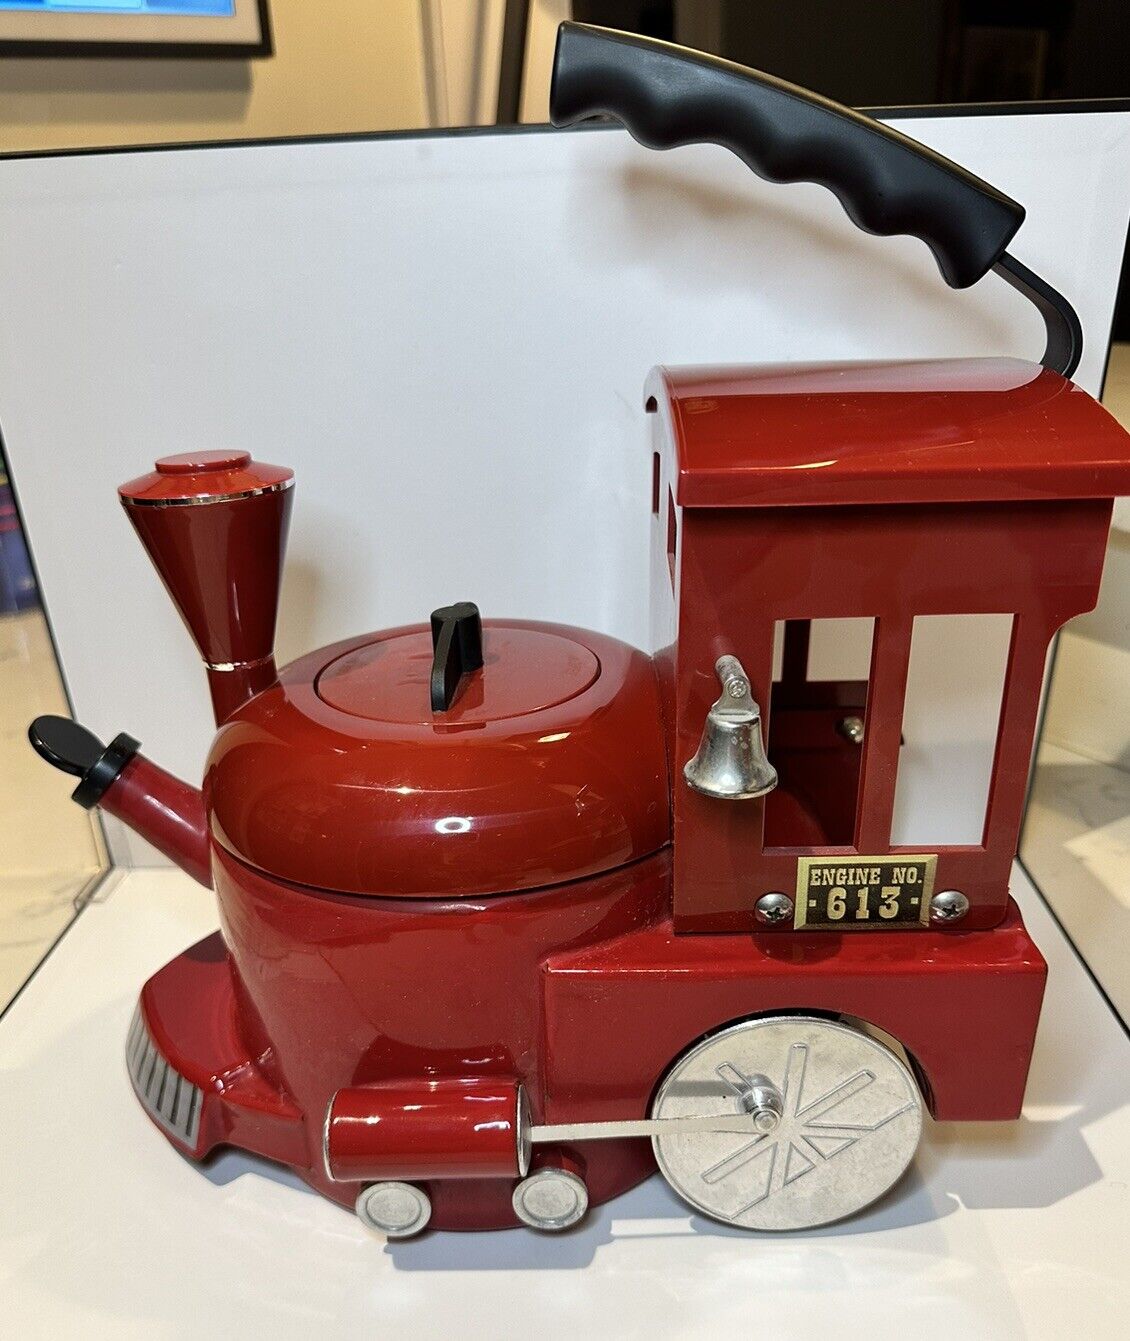 MKI Kamenstein World of Motion Steam Engine Train Tea Pot Kettle Red 613 Vintage